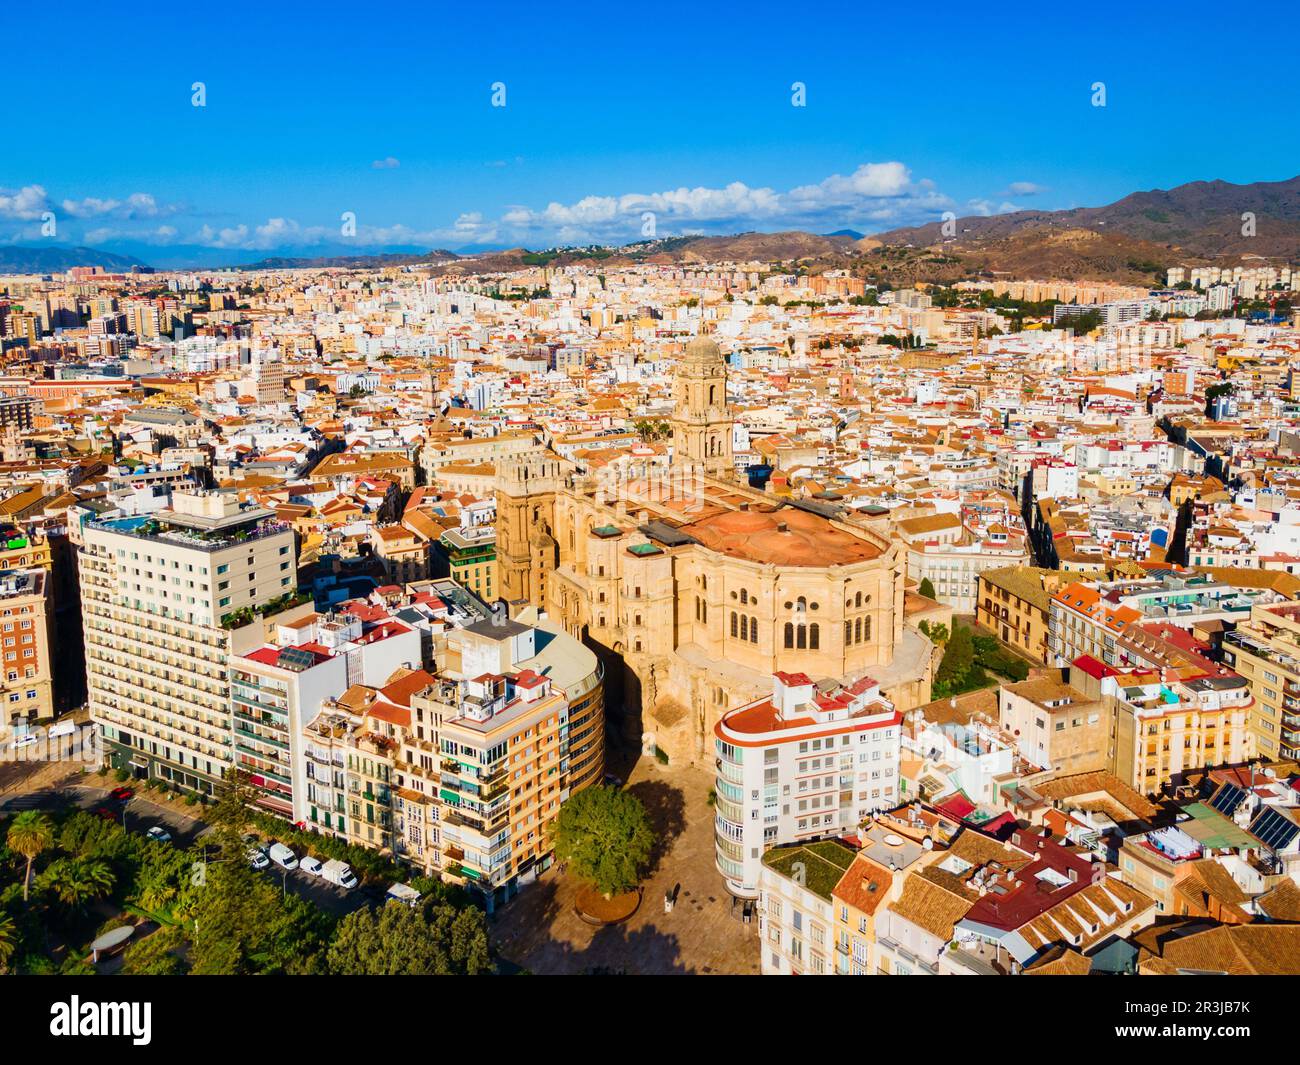 Vista panoramica aerea della Cattedrale di Malaga. La Cattedrale di Malaga è una chiesa cattolica romana nella comunità andalusa in Spagna. Foto Stock